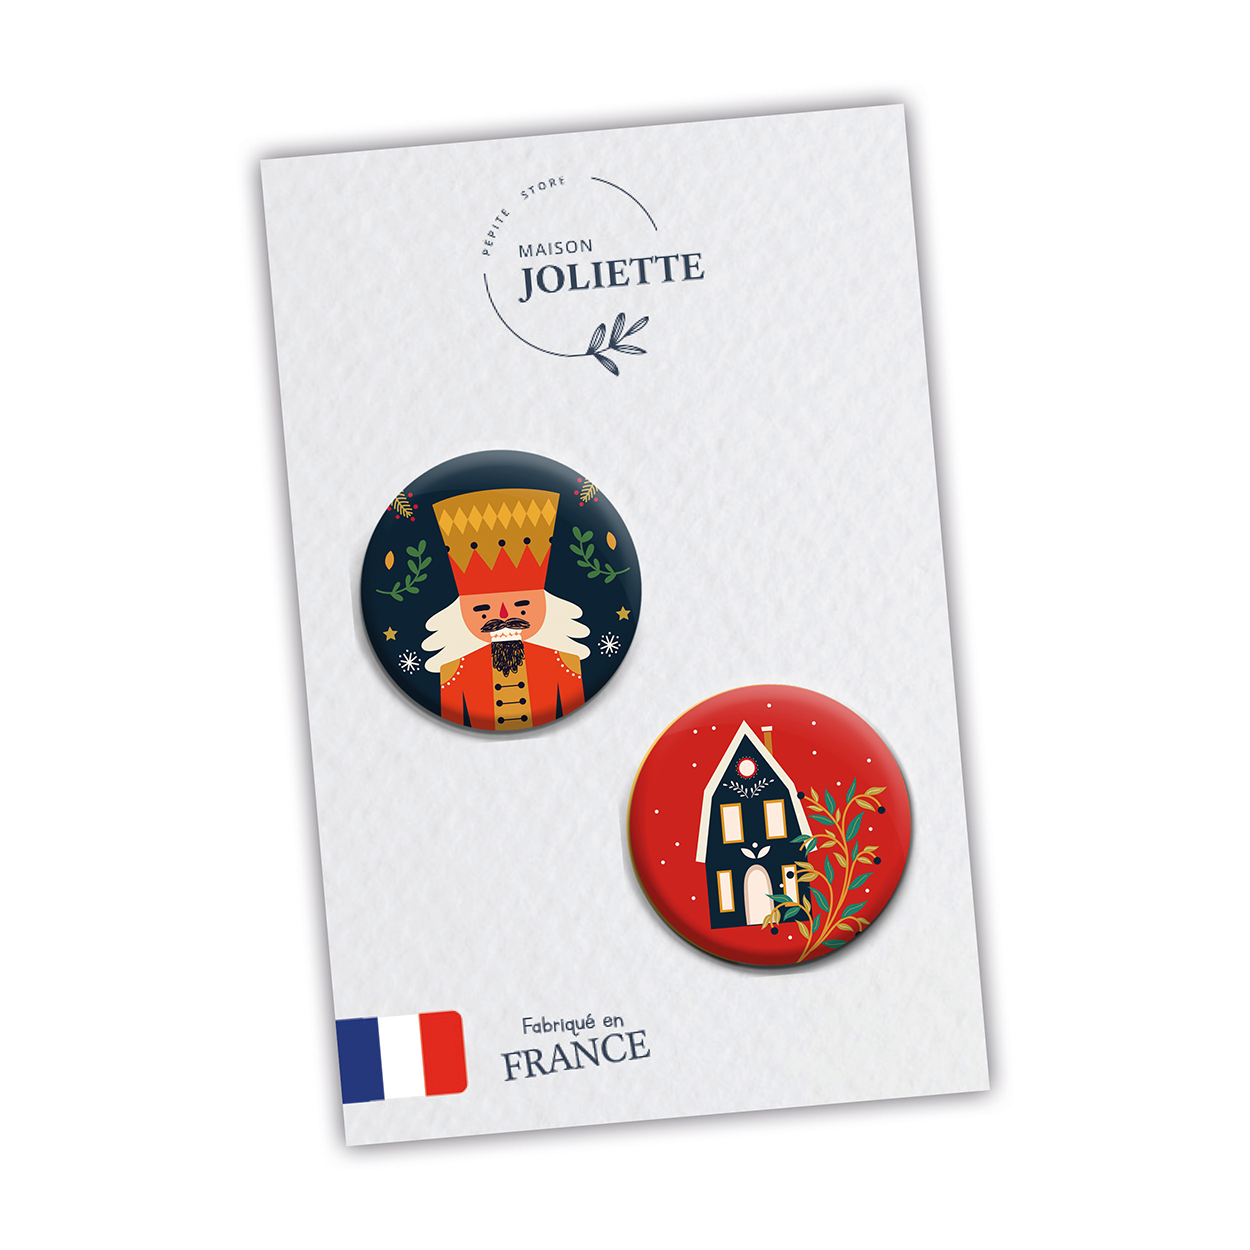 Casse-noisette + maison noël - Lot de 2 badges #90